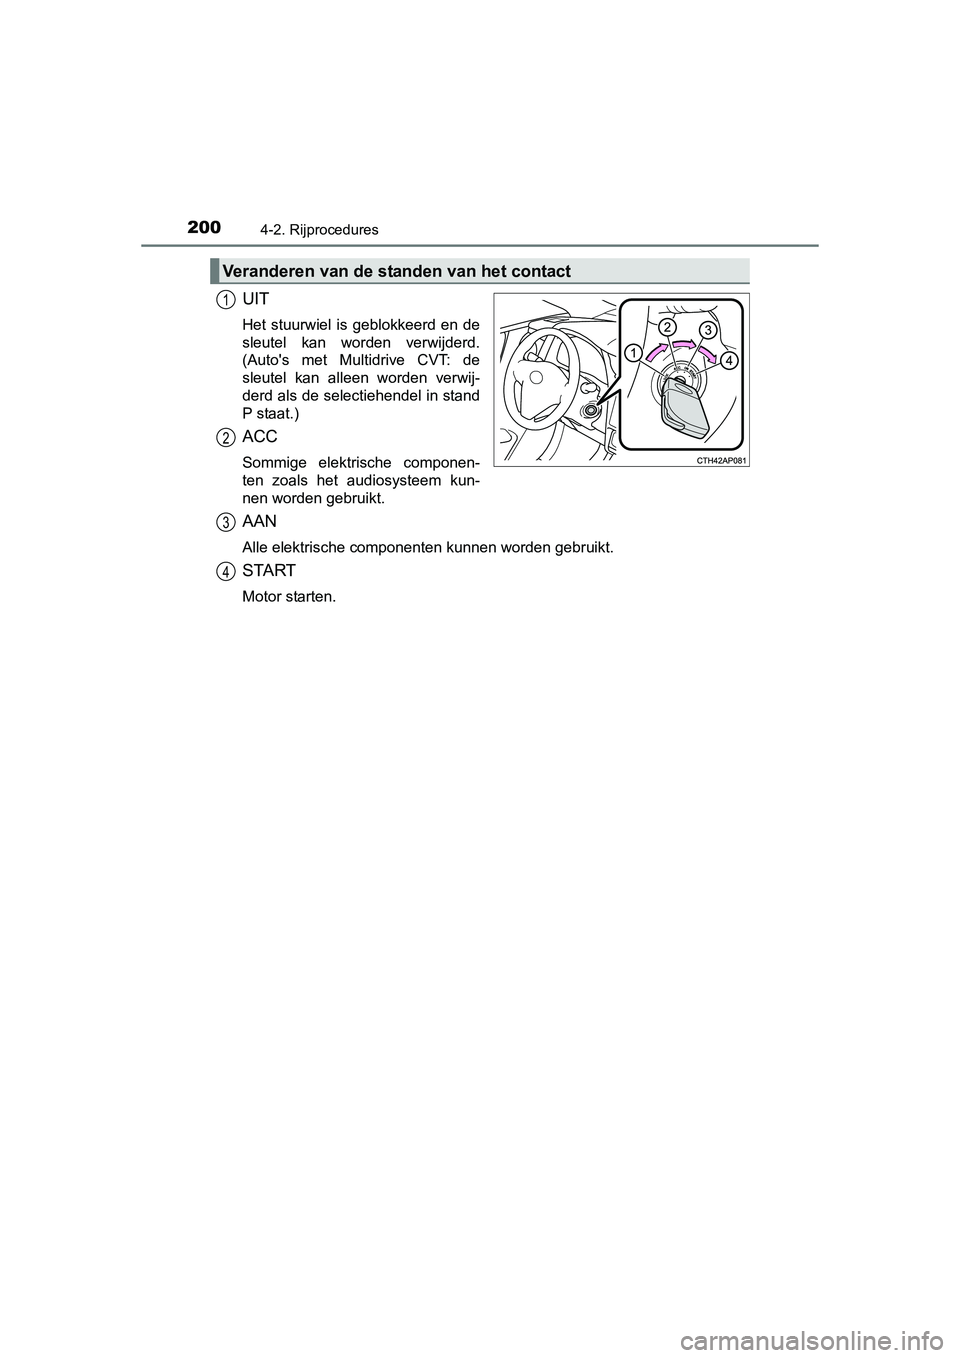 TOYOTA AURIS 2016  Instructieboekje (in Dutch) 2004-2. Rijprocedures
UK AURIS_HB_EE (OM12J21E)
UIT
Het stuurwiel is geblokkeerd en de
sleutel kan worden verwijderd.
(Autos met Multidrive CVT: de
sleutel kan alleen worden verwij-
derd als de selec